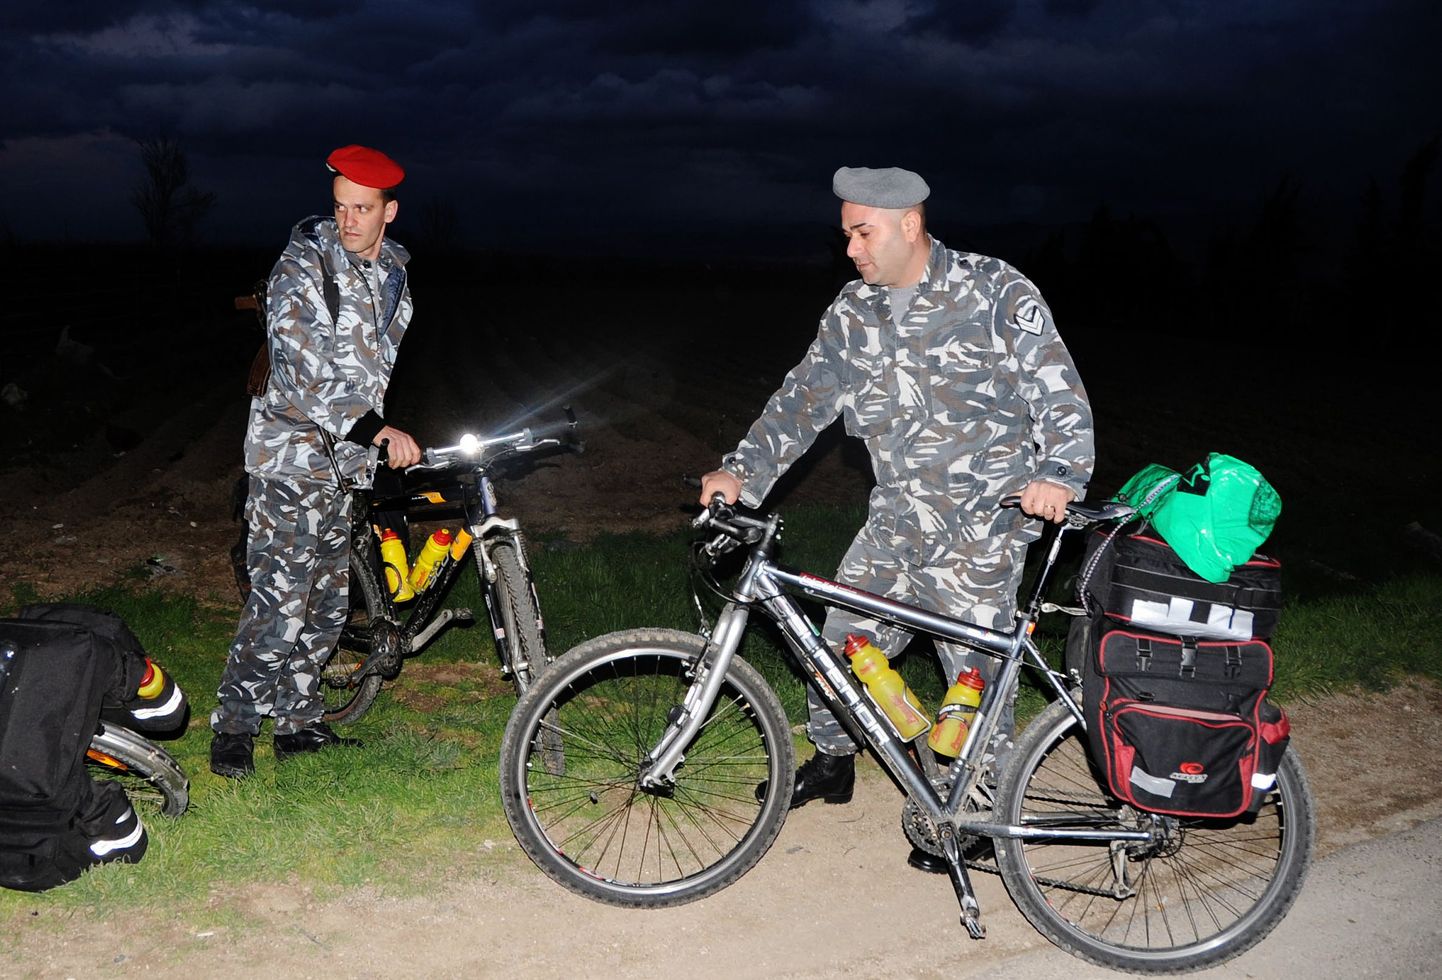 Liibanoni politseinikud pantvangi võetud Eesti kodanike jalgratastega.